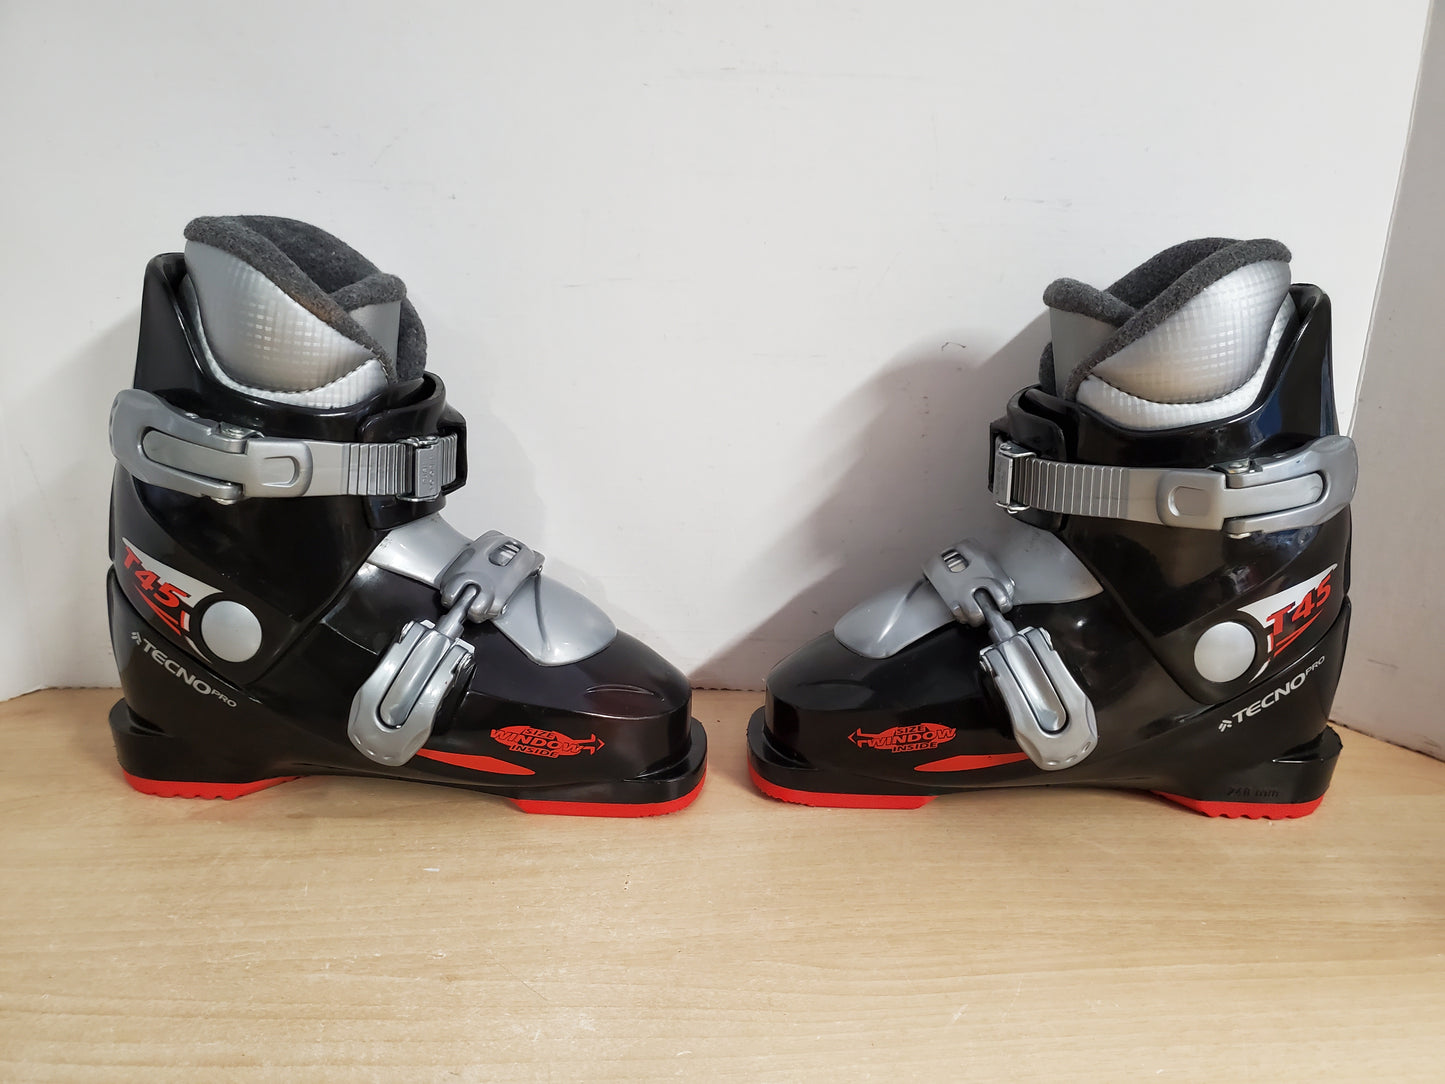 Ski Boots Mondo Size 20.0 Child Shoe Size 1-2 Mondo 248 mm Tecno Pro T45 Black Red Grey New Demo Model